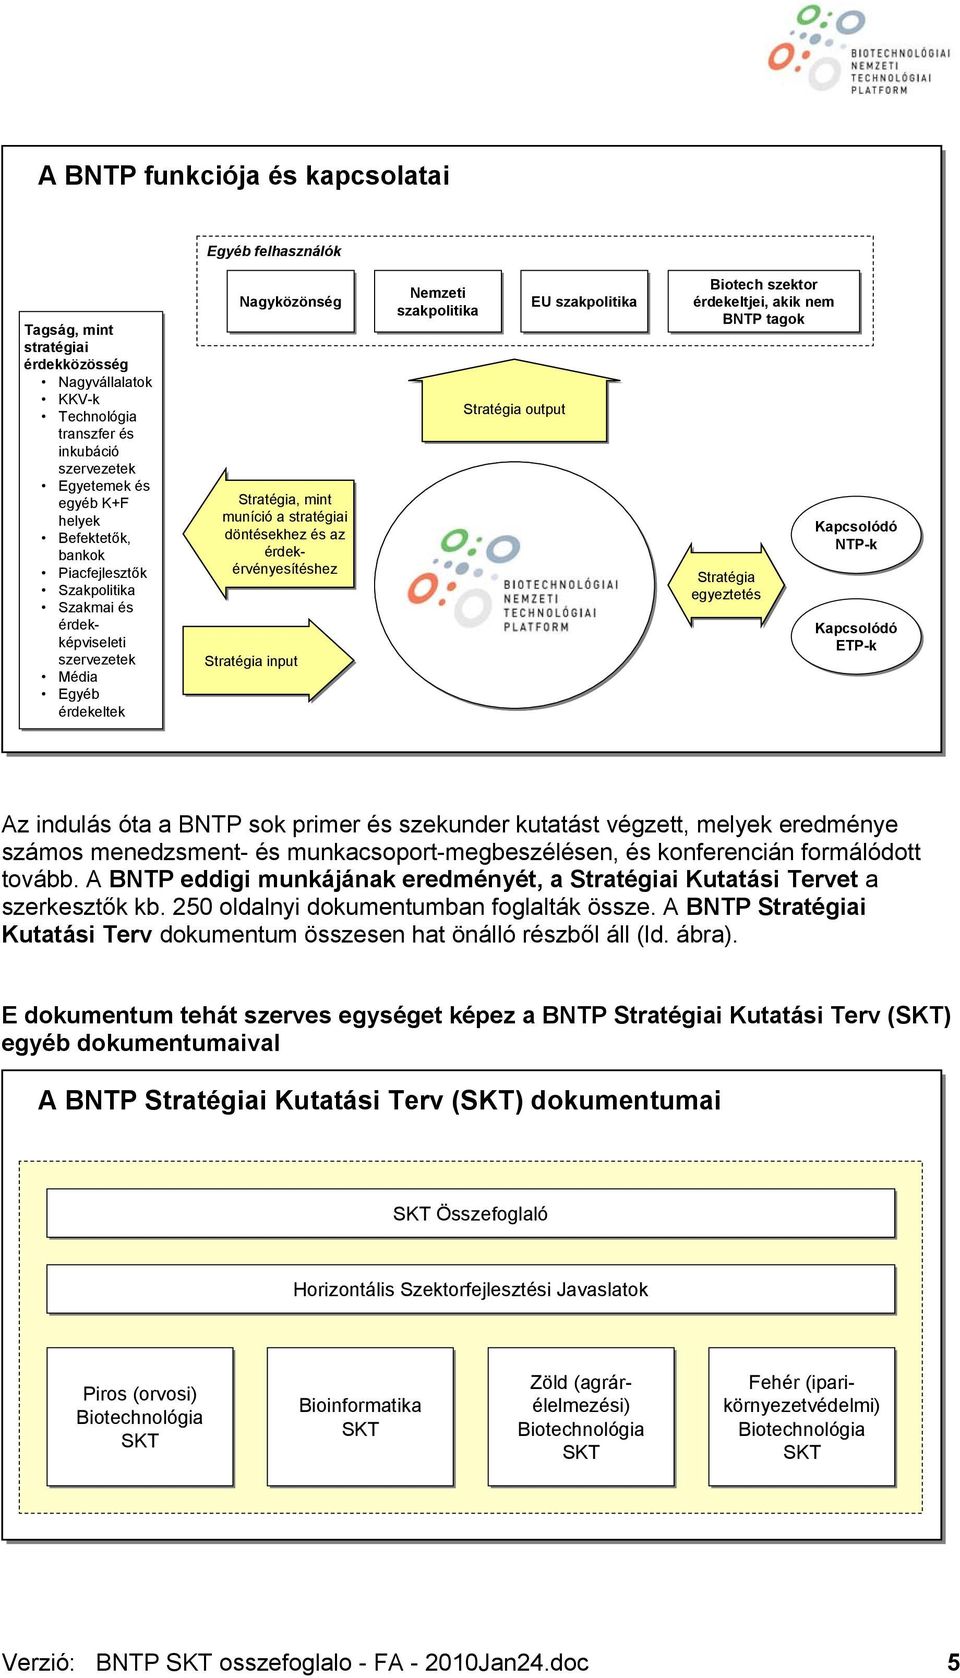 input Nemzeti szakpolitika Stratégia output EU szakpolitika Biotech szektor érdekeltjei, akik nem BNTP tagok Kapcsolódó NTP-k Stratégia egyeztetés Kapcsolódó ETP-k Az indulás óta a BNTP sok primer és